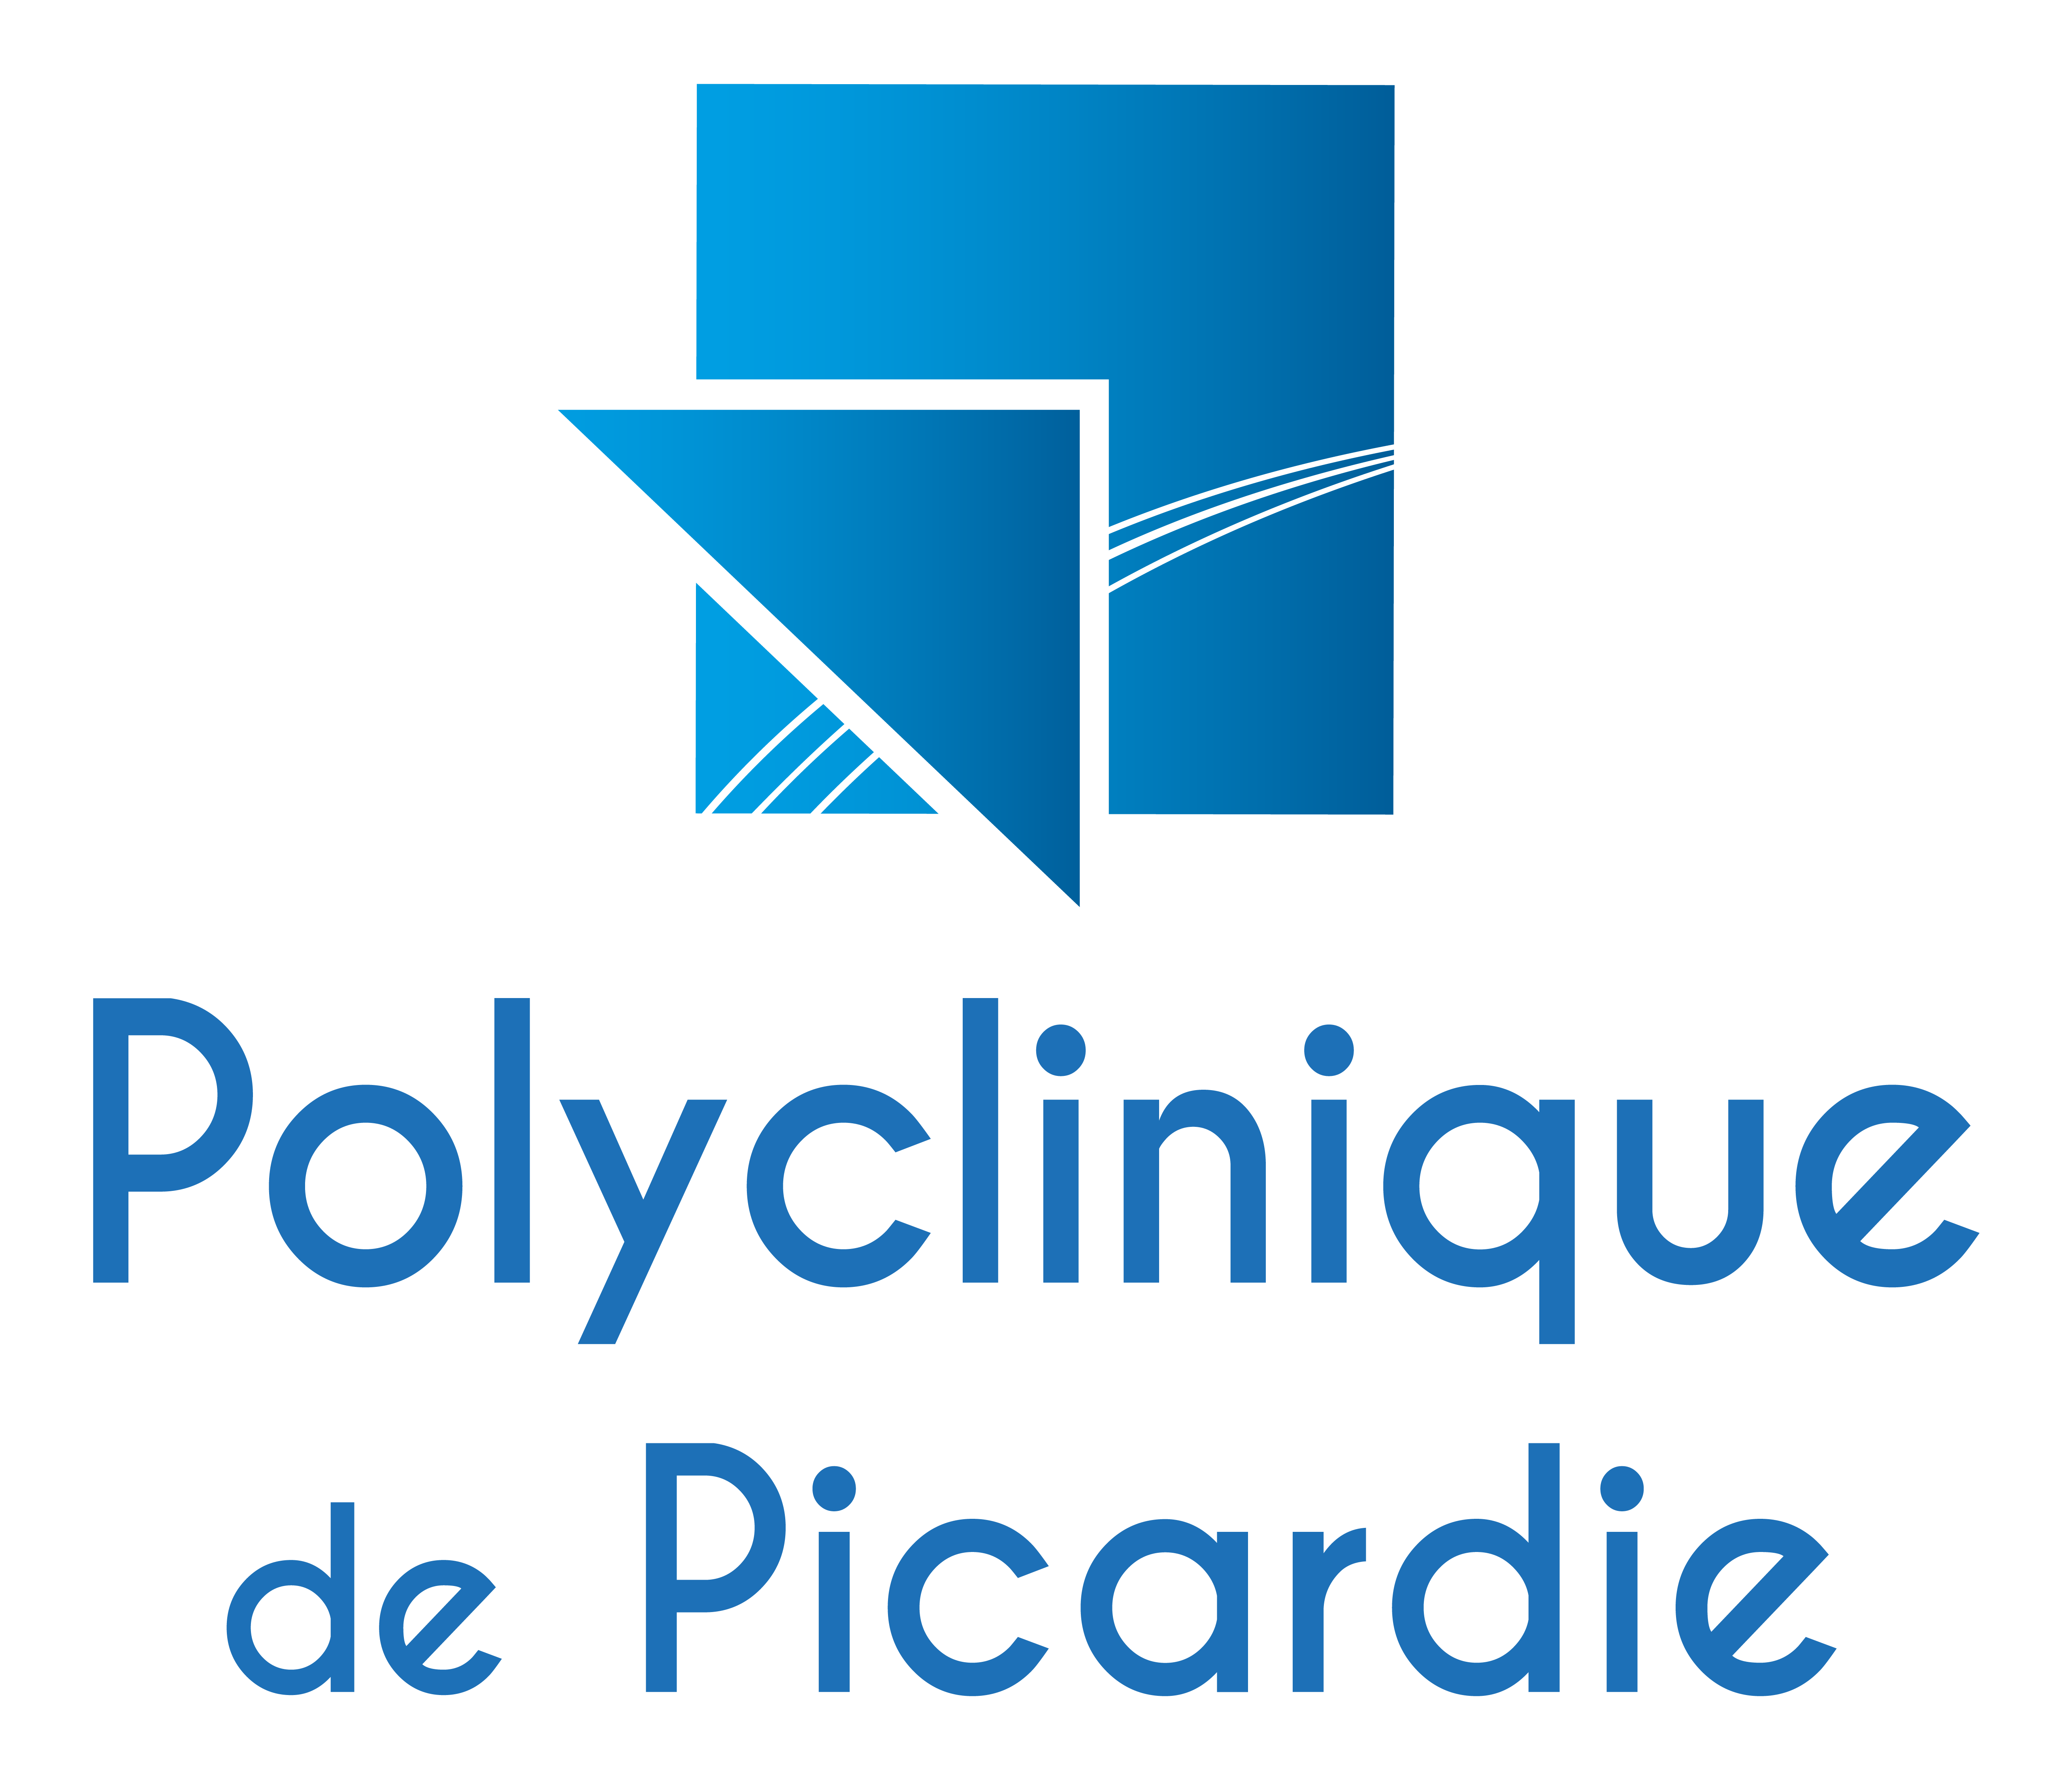 Polyclinique de Picardie - Adopt1Alternant - Offres d'emploi en stage et alternance